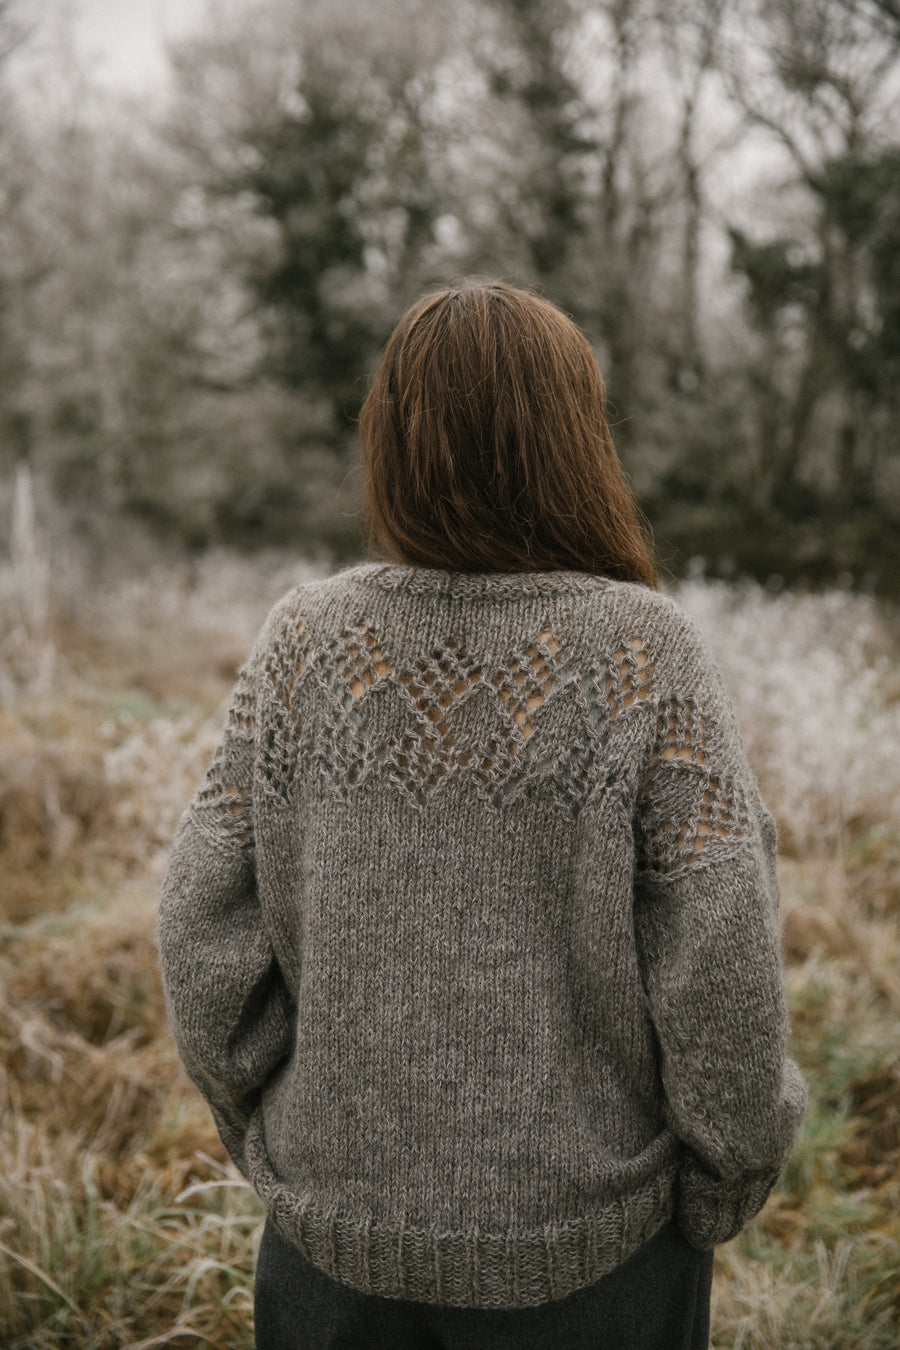 Biches & Bûches no. 6 - The Amanda Sweater kit tricot